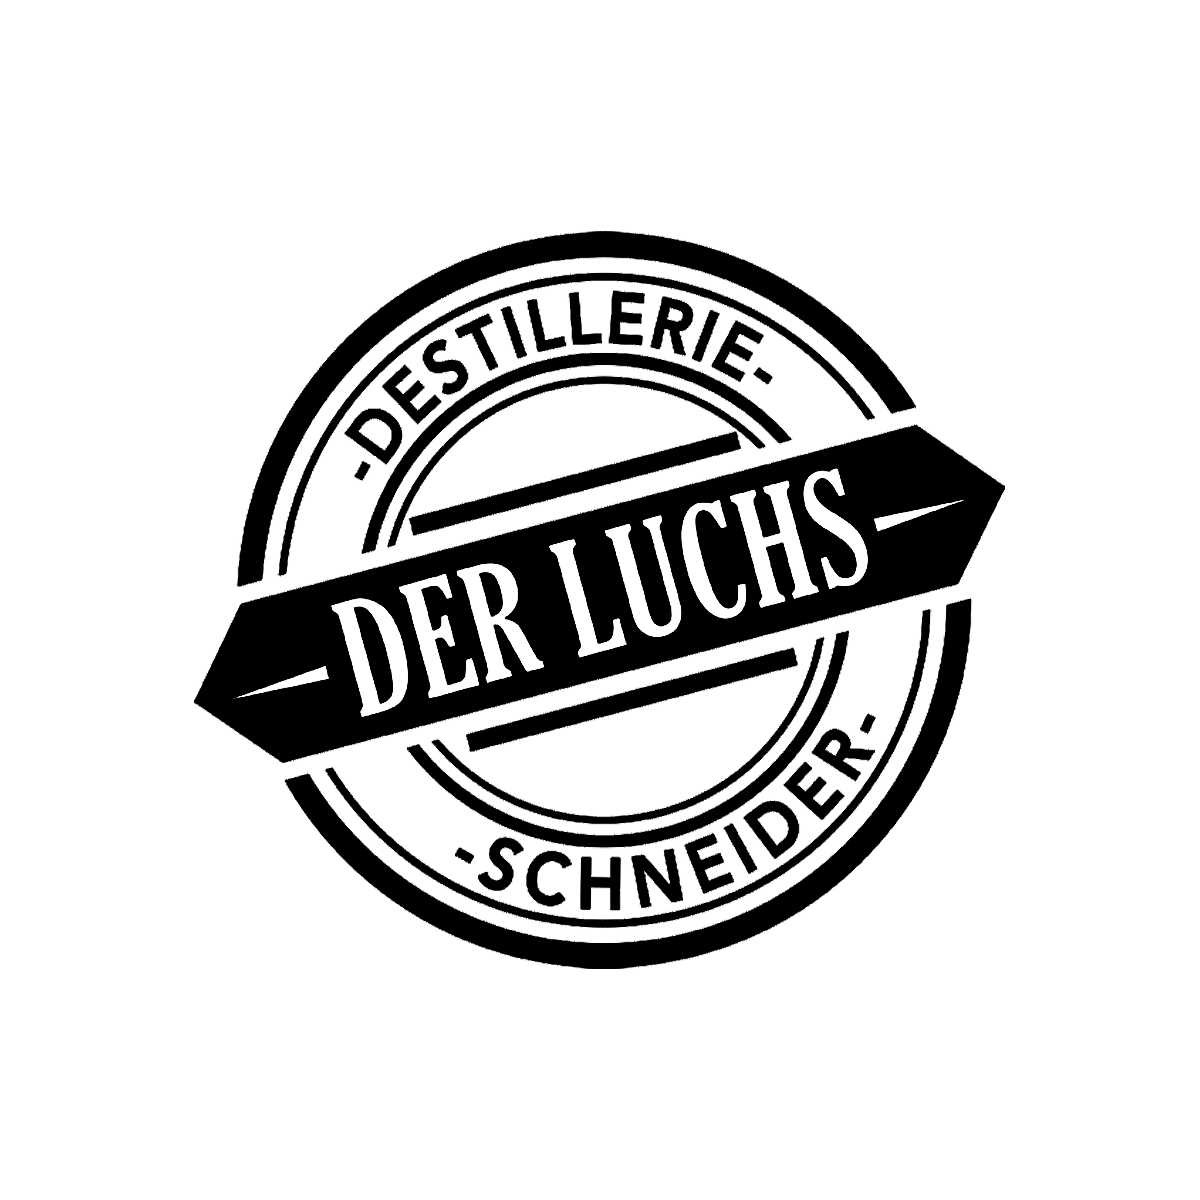 Der Luchs Logo